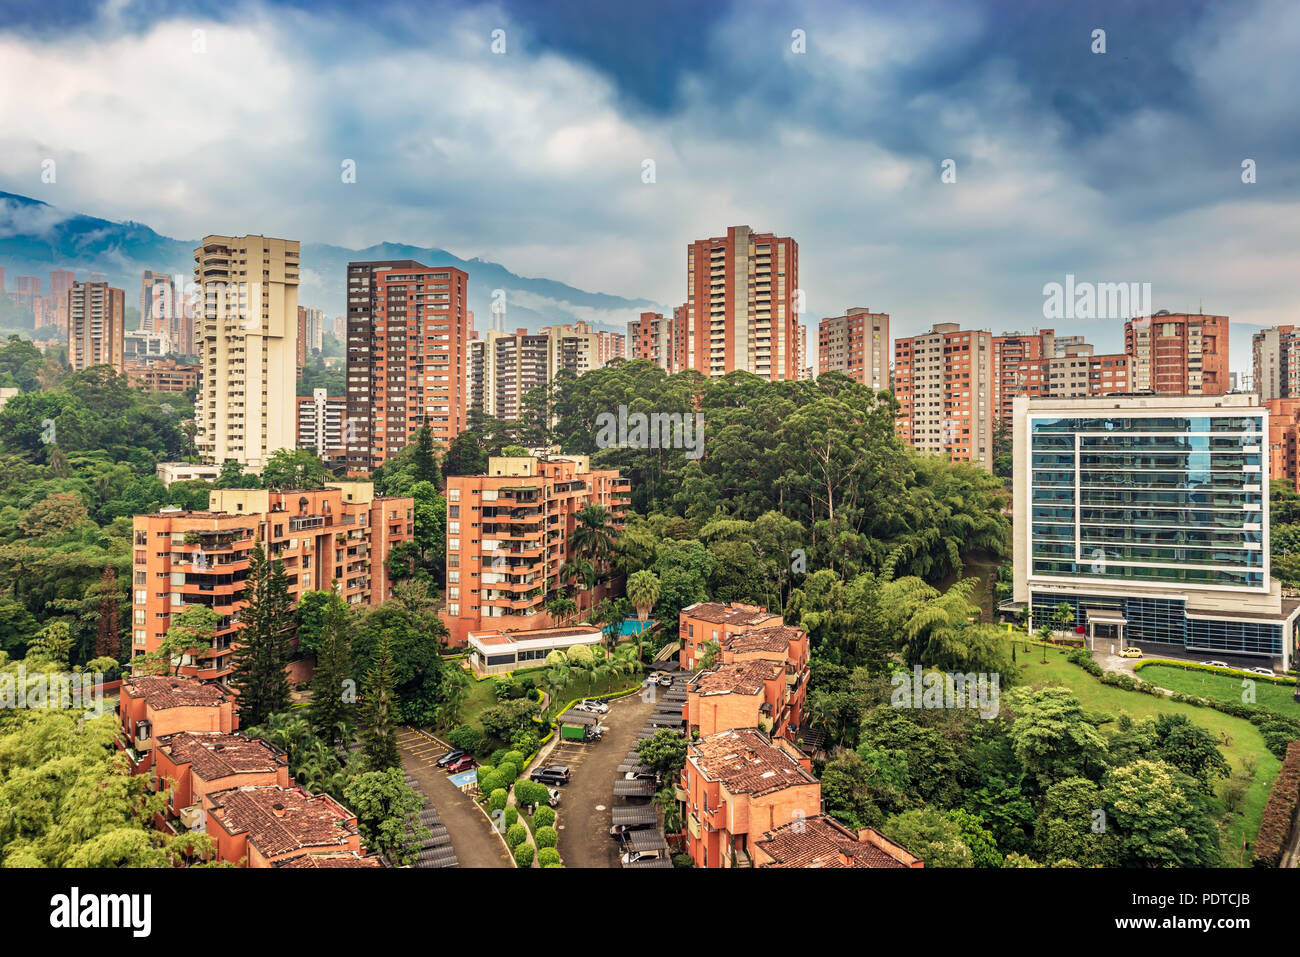 Vue panoramique à l'immeuble en copropriété, d'immeubles à appartements à une zone exclusive de Medellin appelé El Poblado, Colombie. Banque D'Images